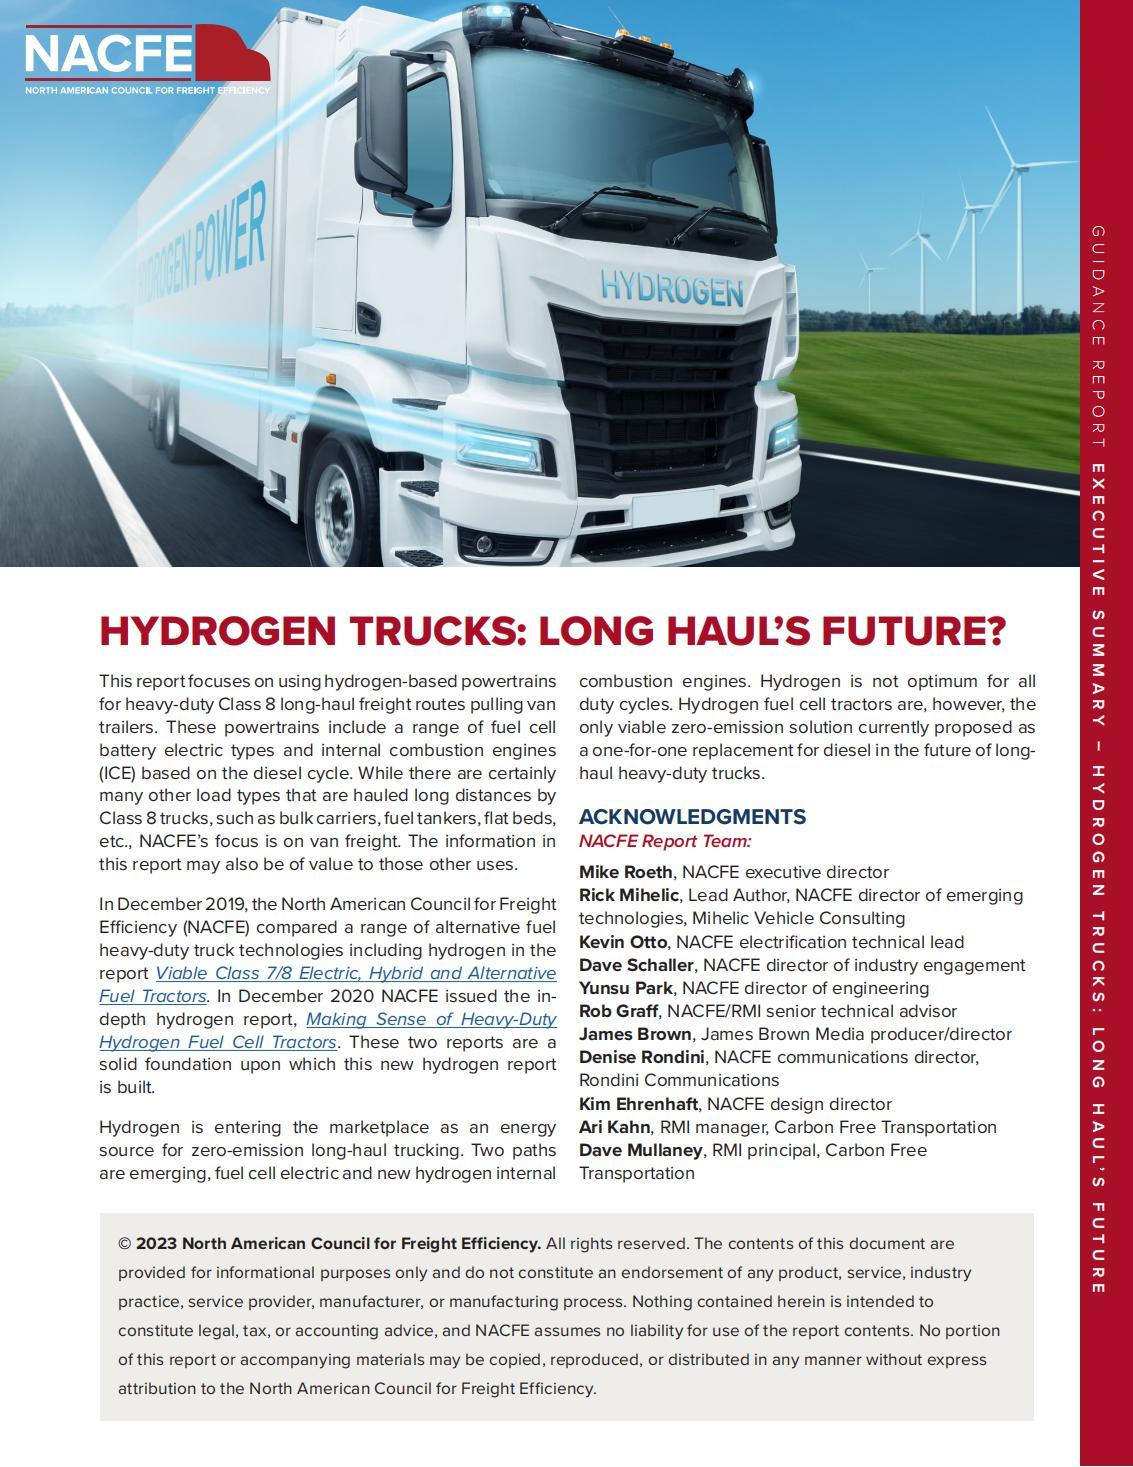 H2-Hydrogen Trucks: LONG HAUL'SFUTURE?